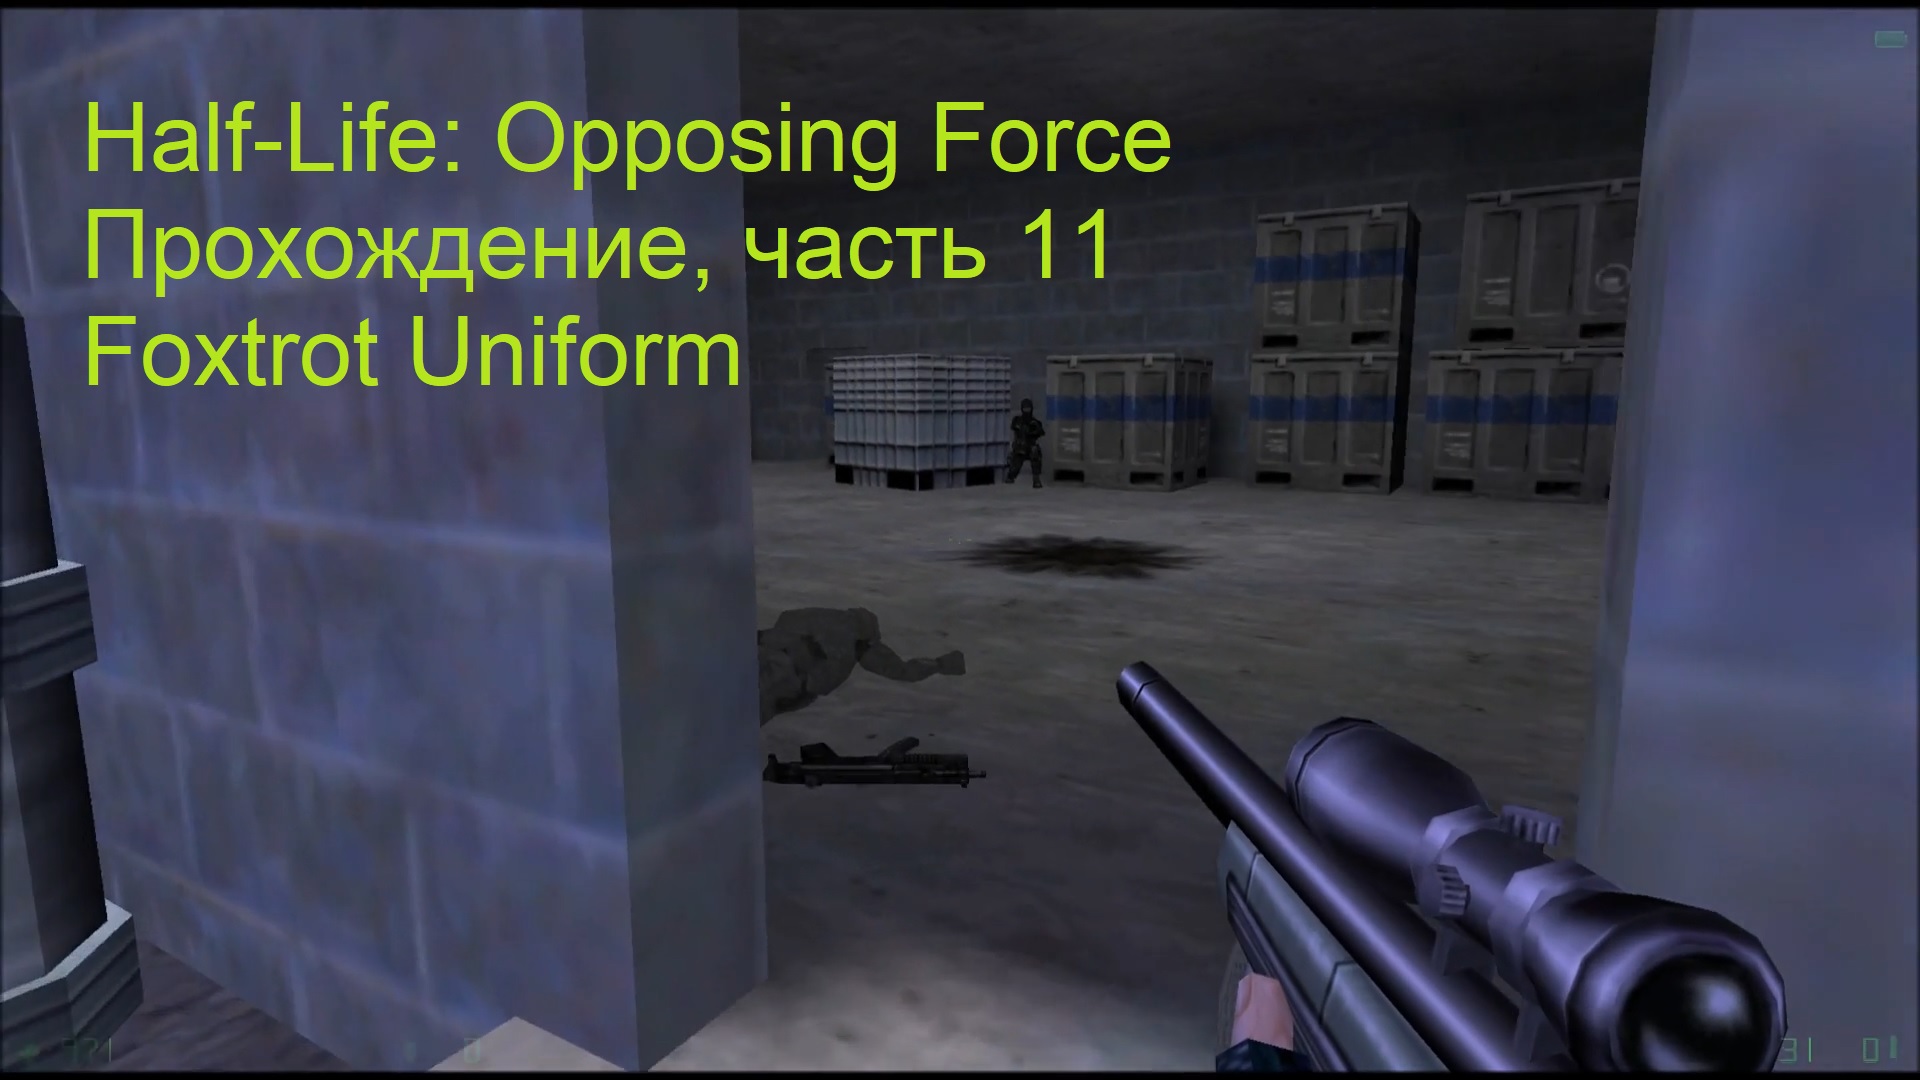 Half-Life: Opposing Force, Прохождение, часть 11 - Foxtrot Uniform